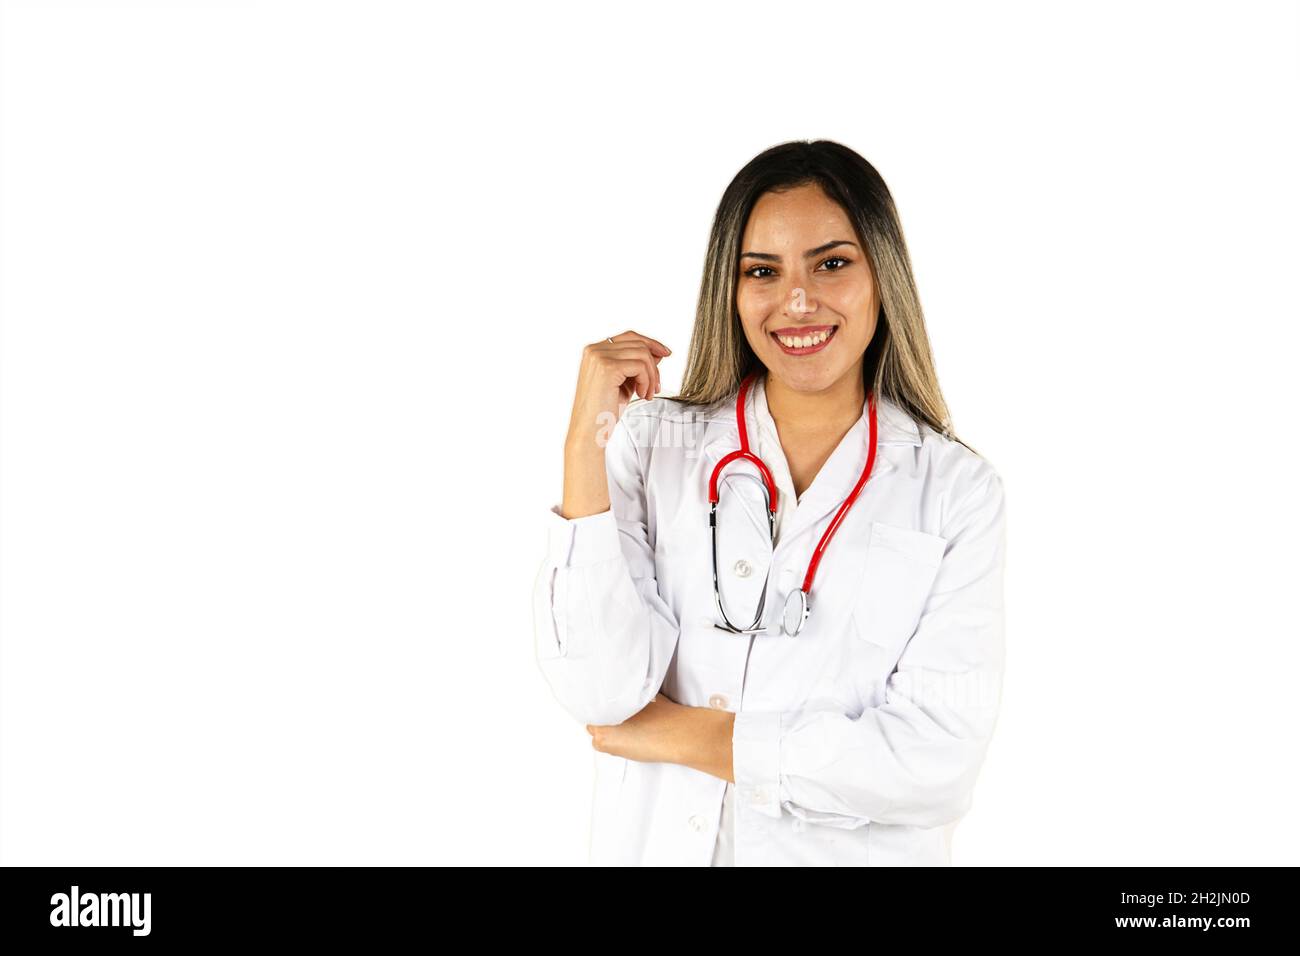 Eine junge Ärztin mit ihrem Stethoskop, das auf weißem Hintergrund lächelt. Konzept der professionellen Frau, Gesundheitspersonal. Stockfoto